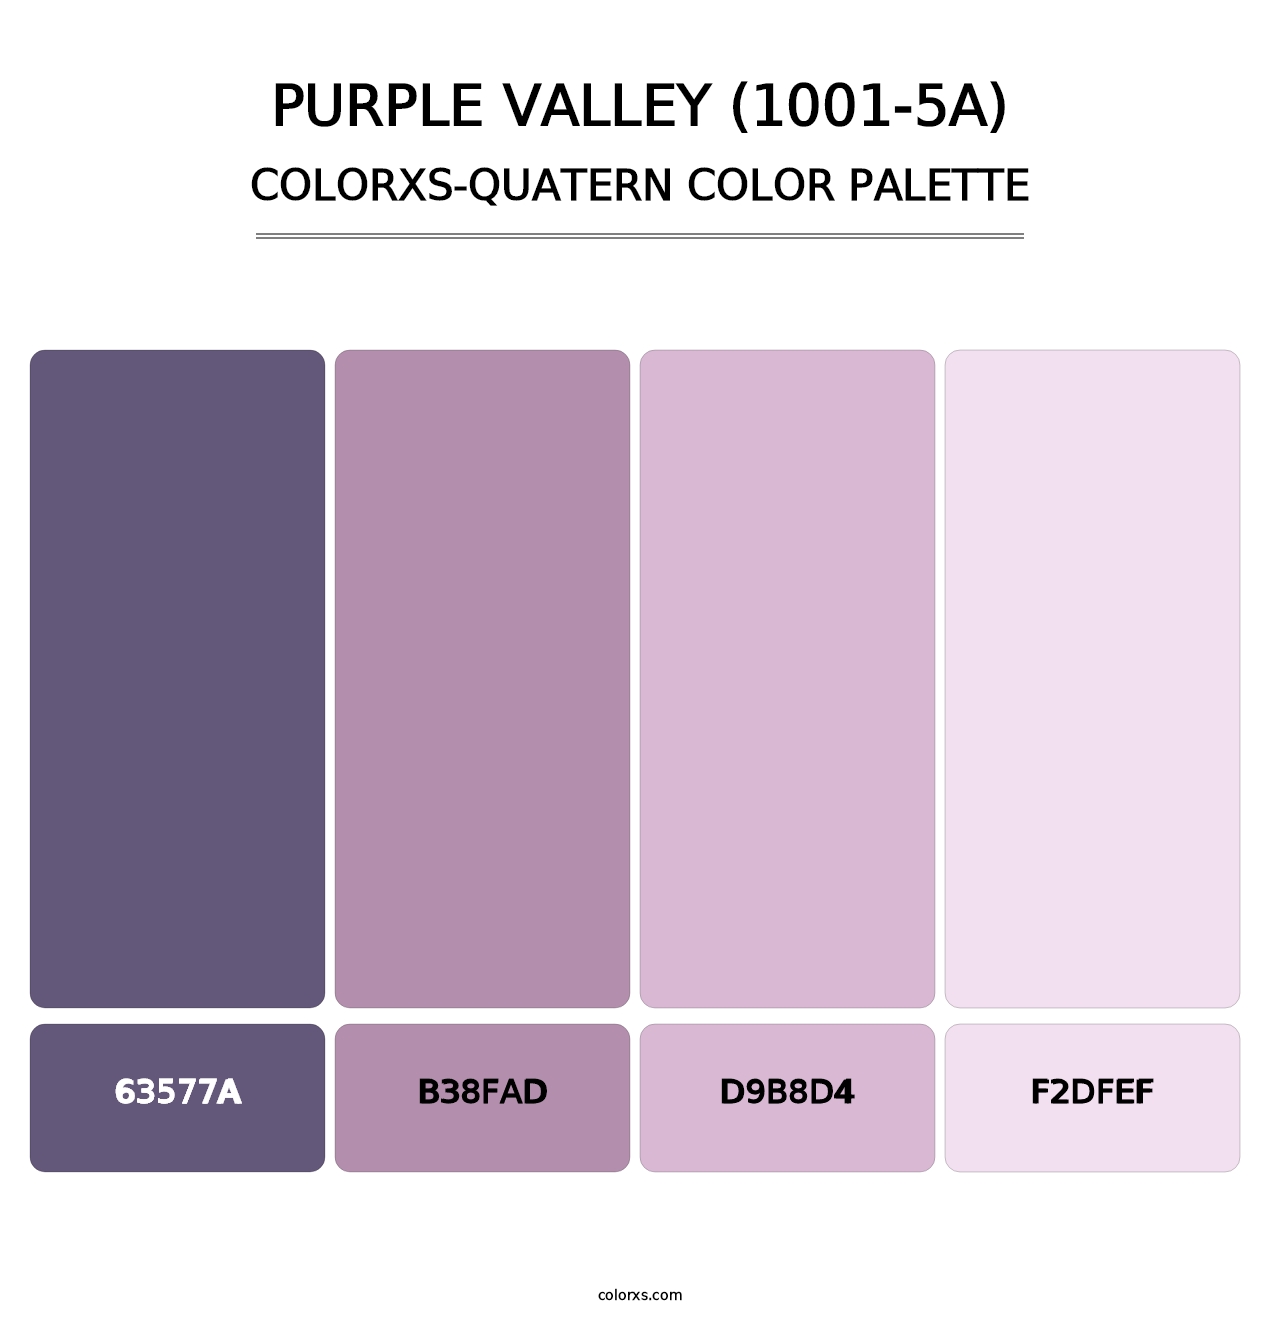 Purple Valley (1001-5A) - Colorxs Quatern Palette